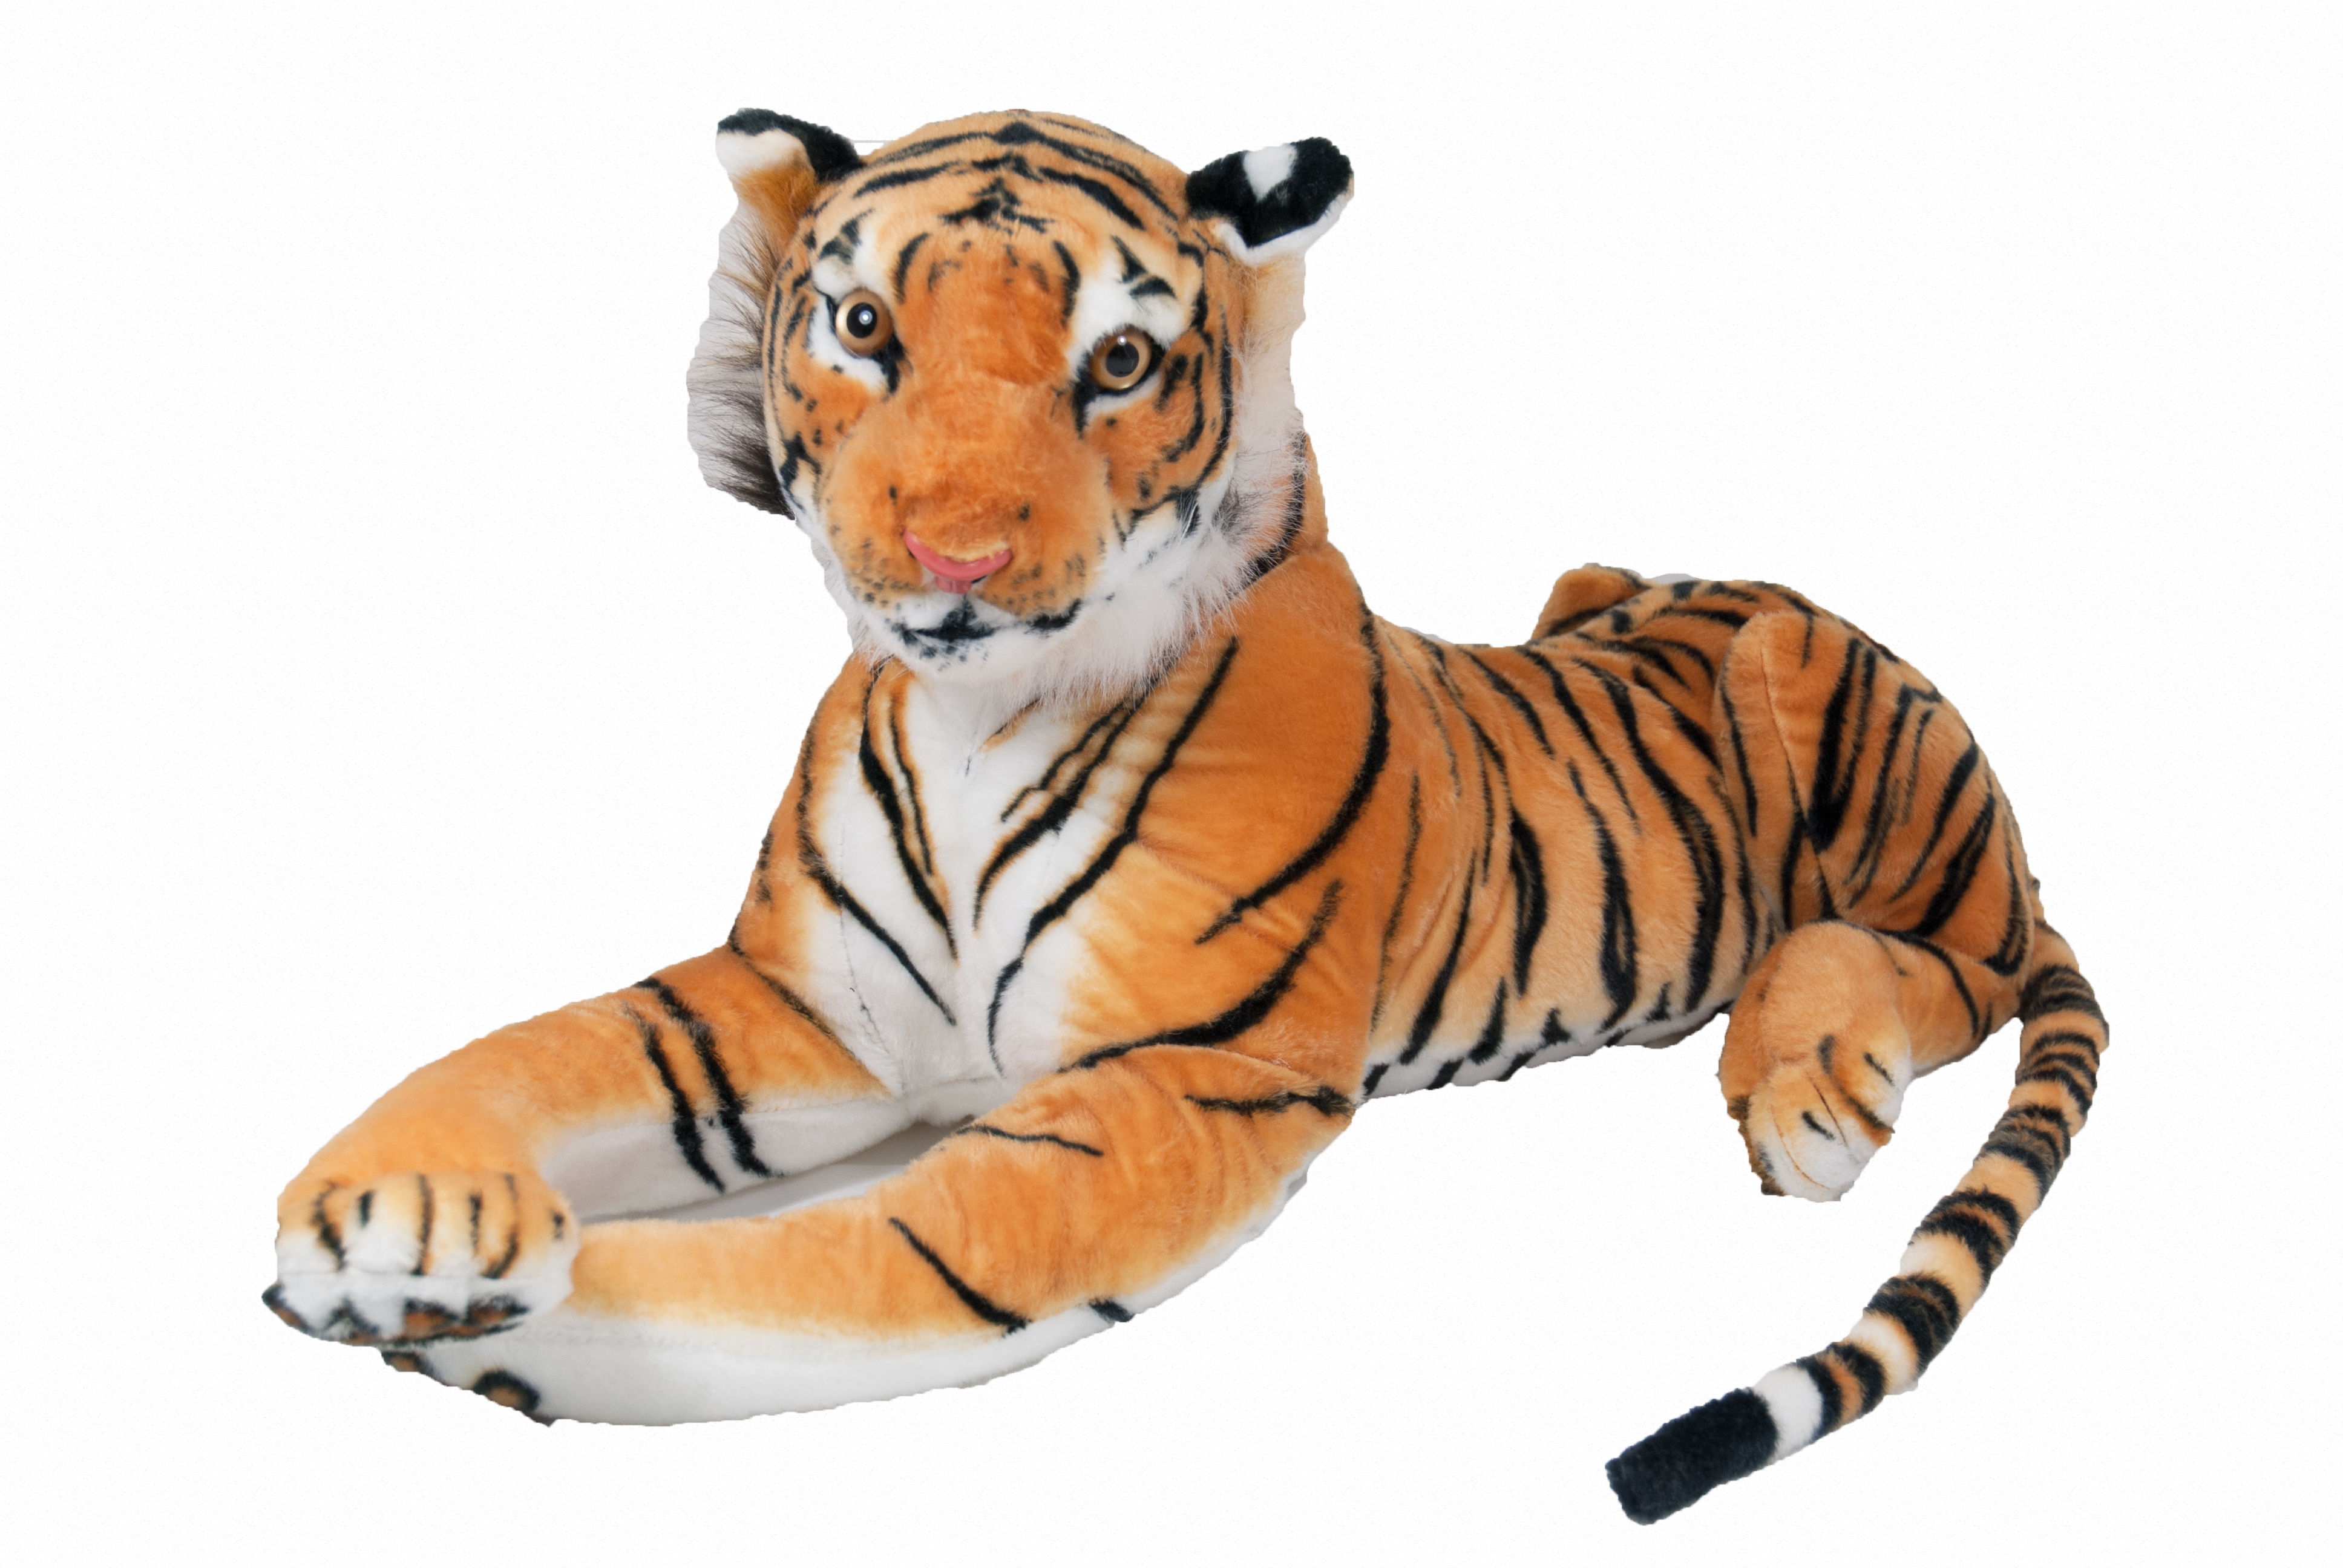 Tiger 60cm braun liegend